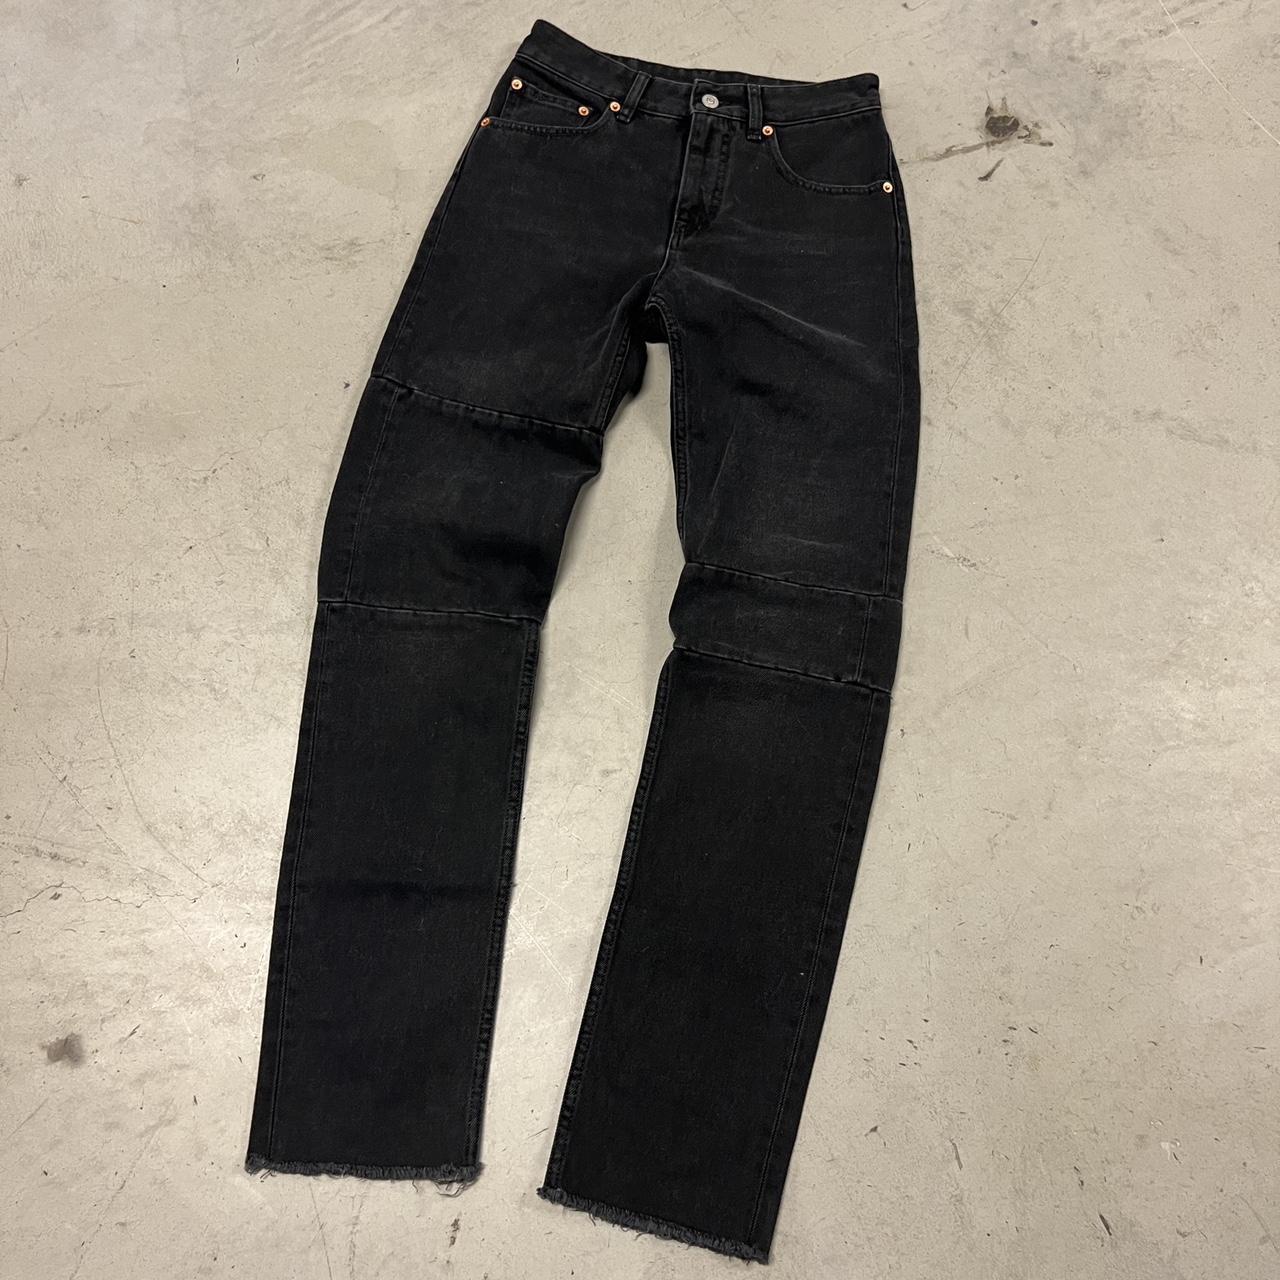 Vintage Faded Black Maison Margiela Slim Jeans Fits... - Depop